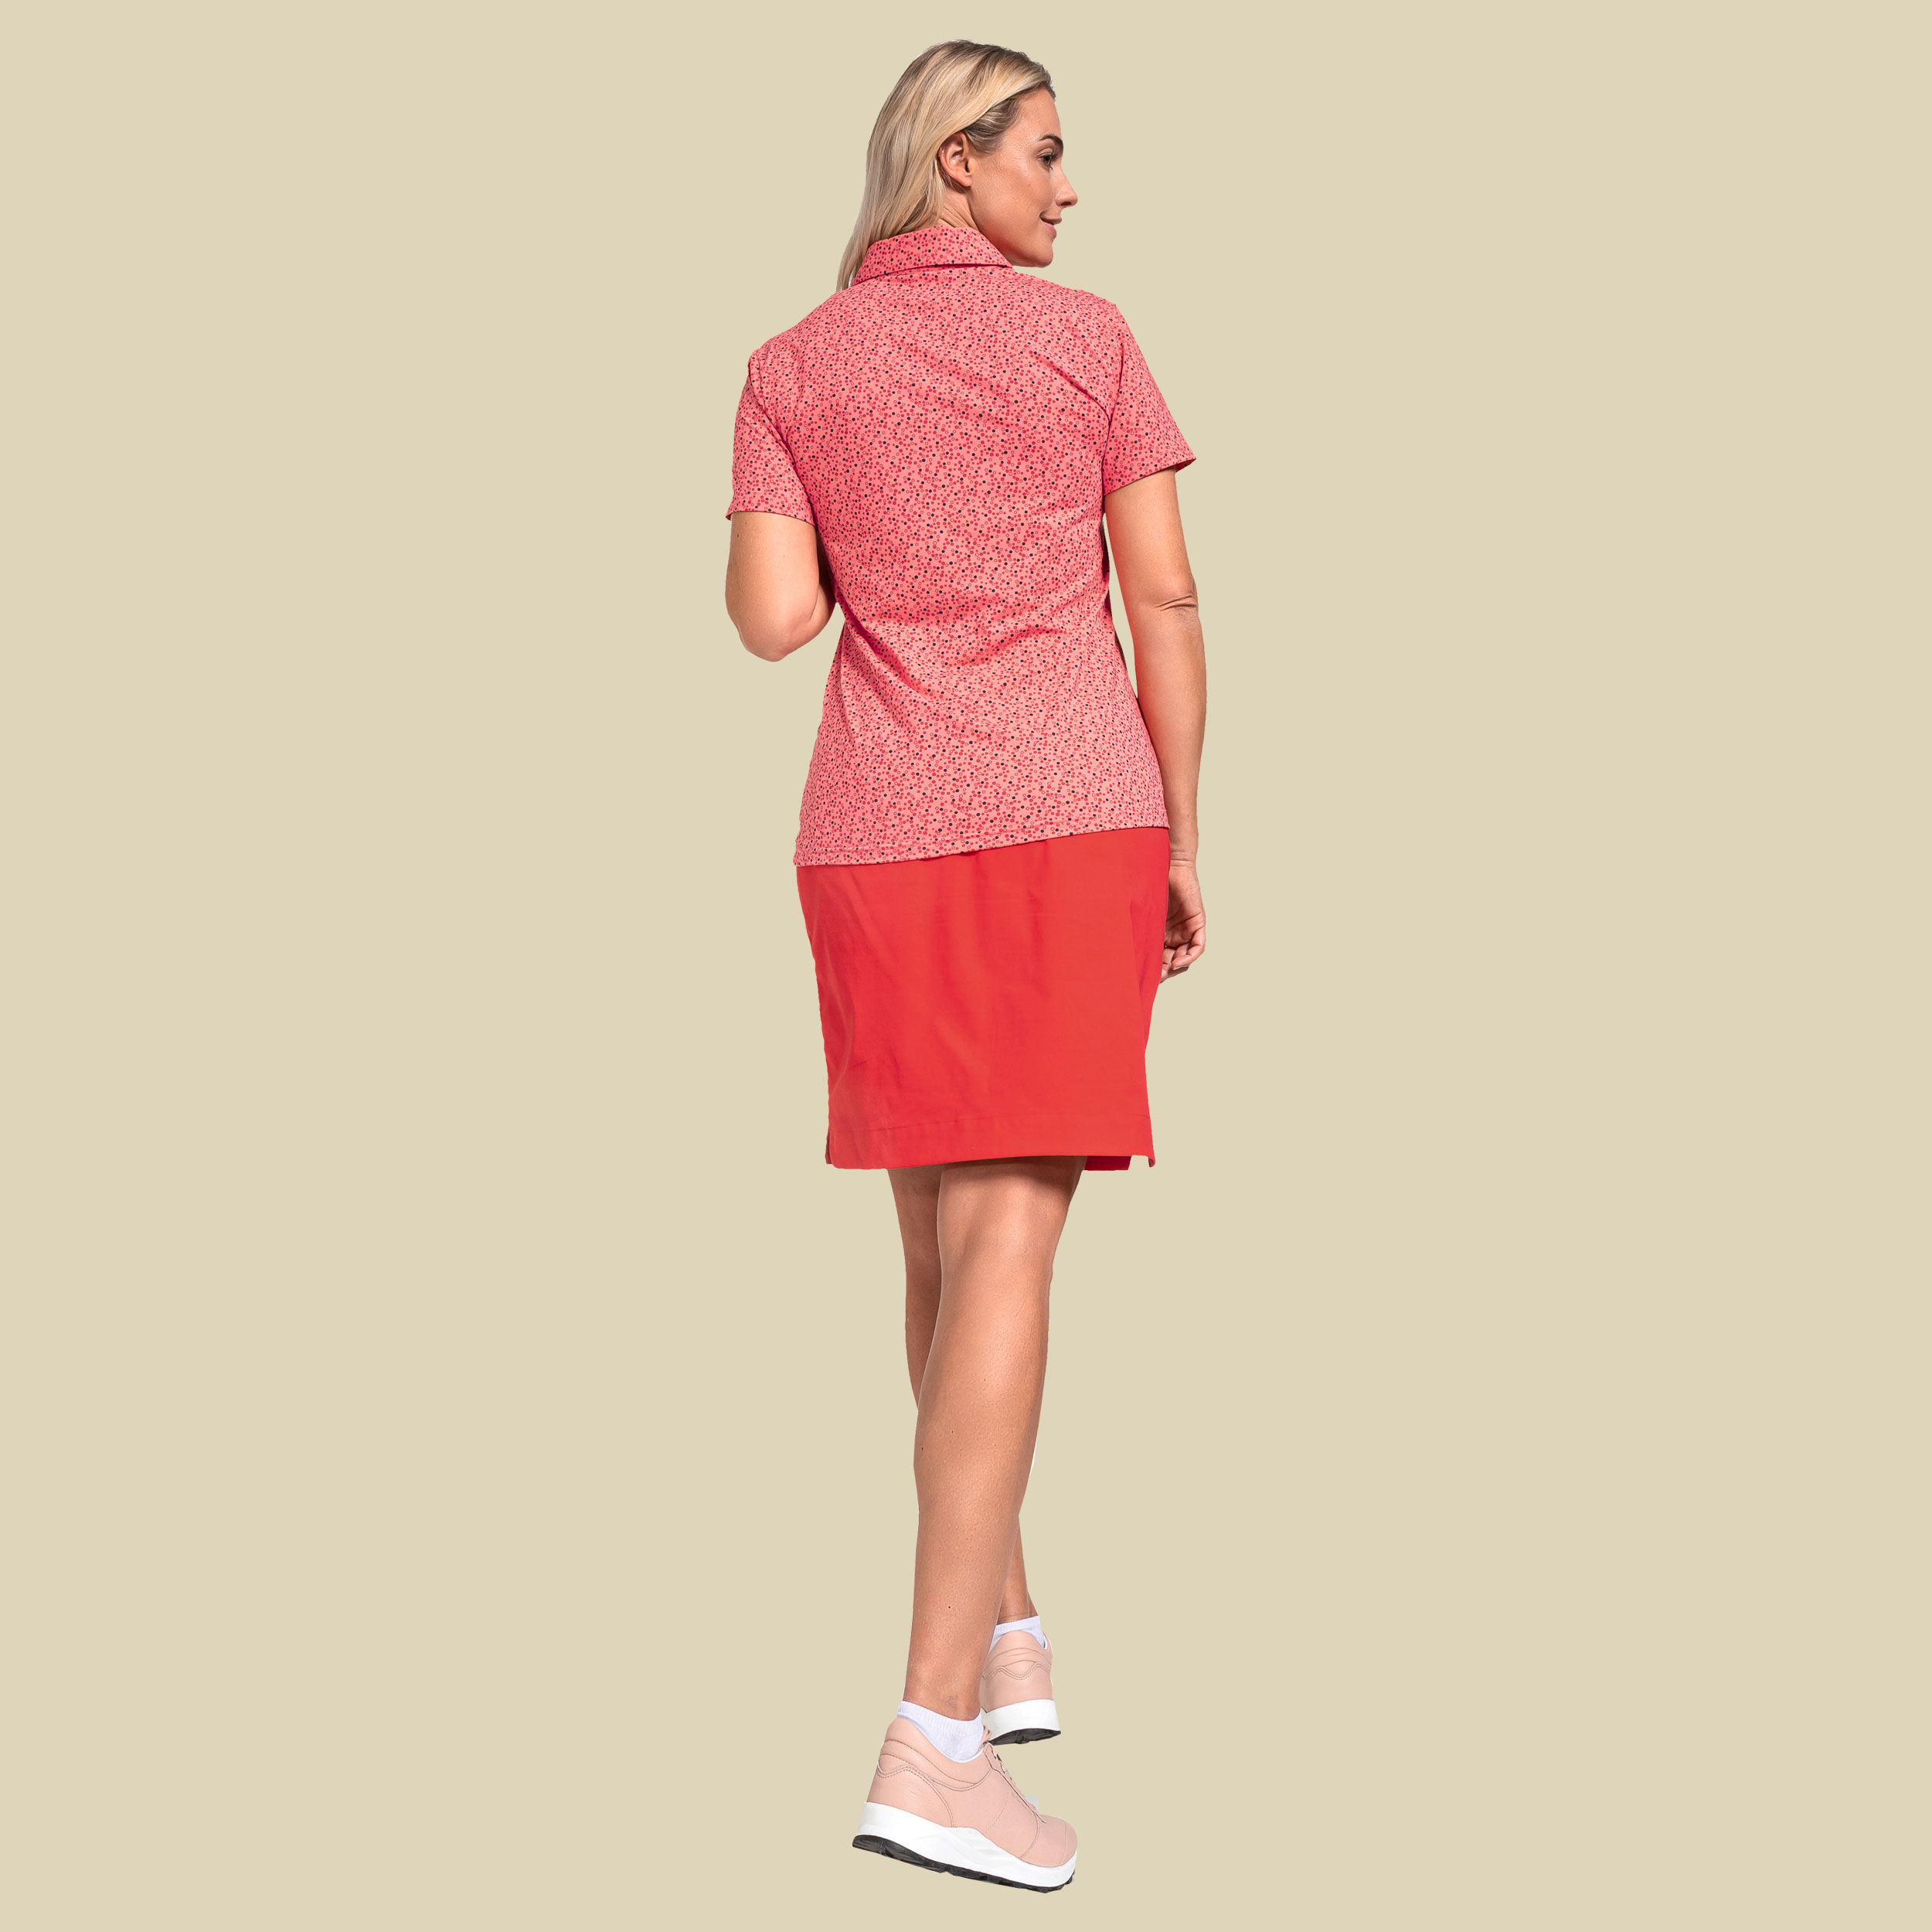 Polo Shirt Stintino Lady Größe 44 Farbe georgia peach